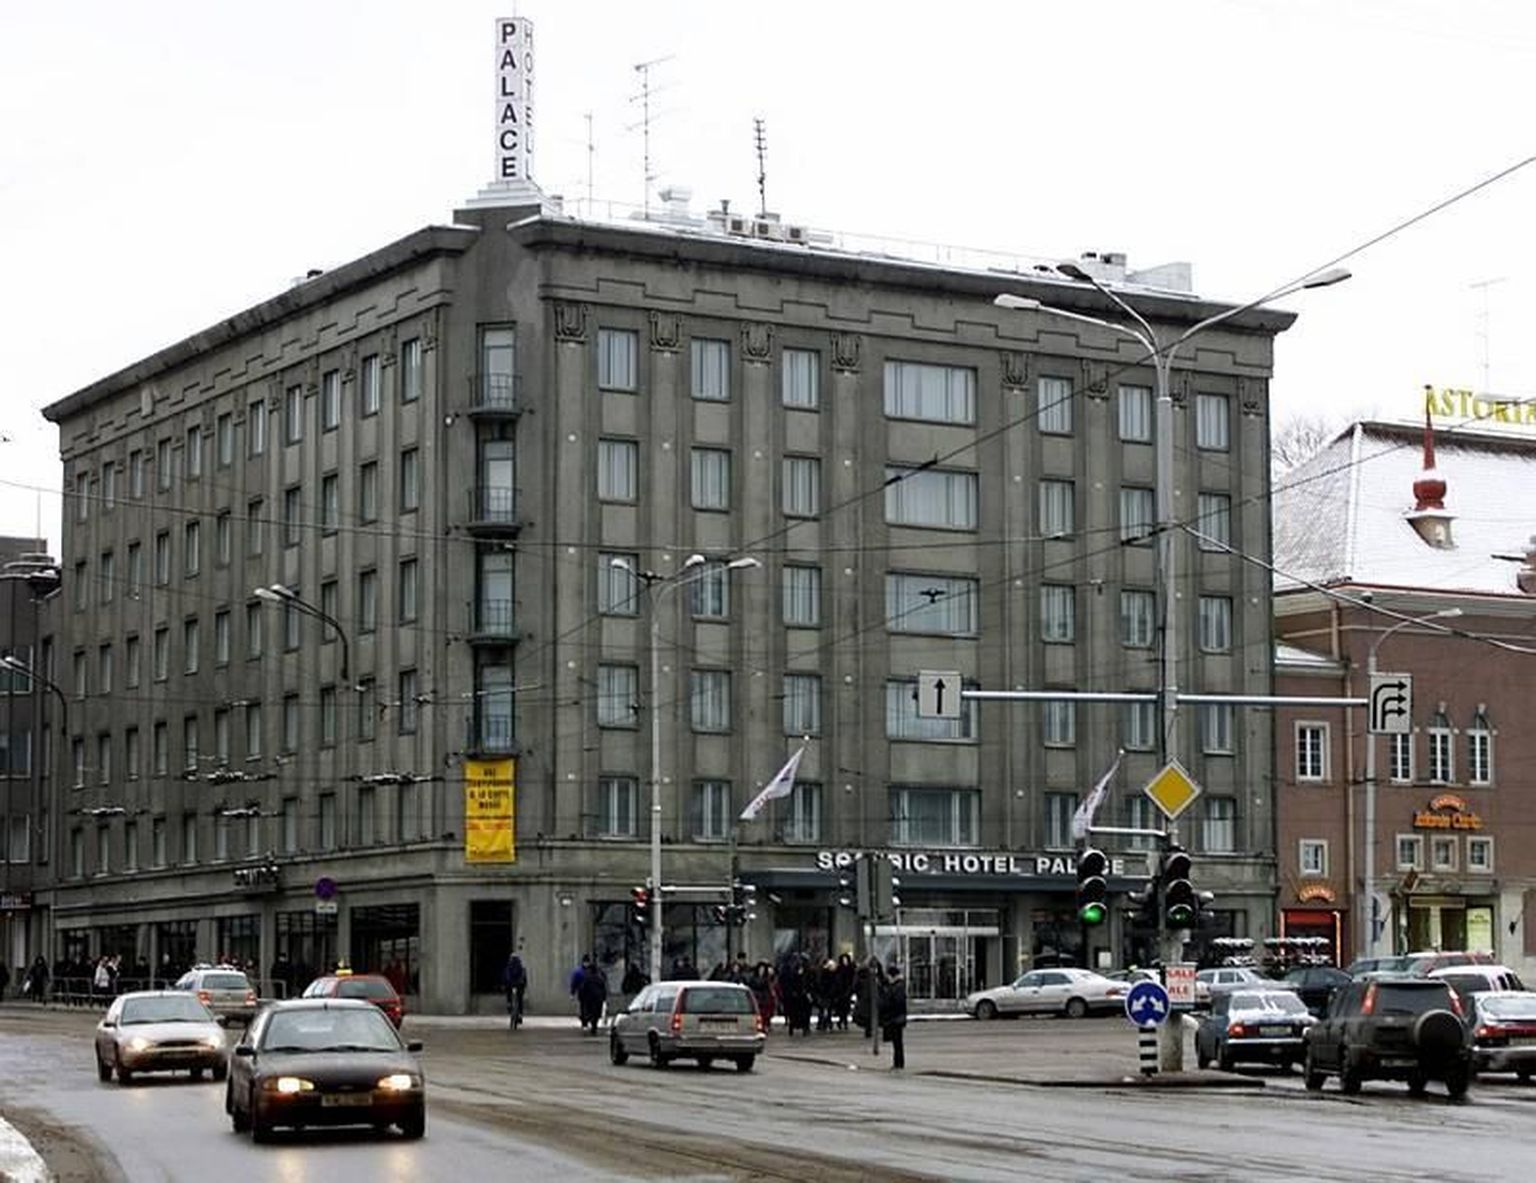 Hotel Palace - лучший отель в Эстонии по версии пользователей портала TripAdvisor.